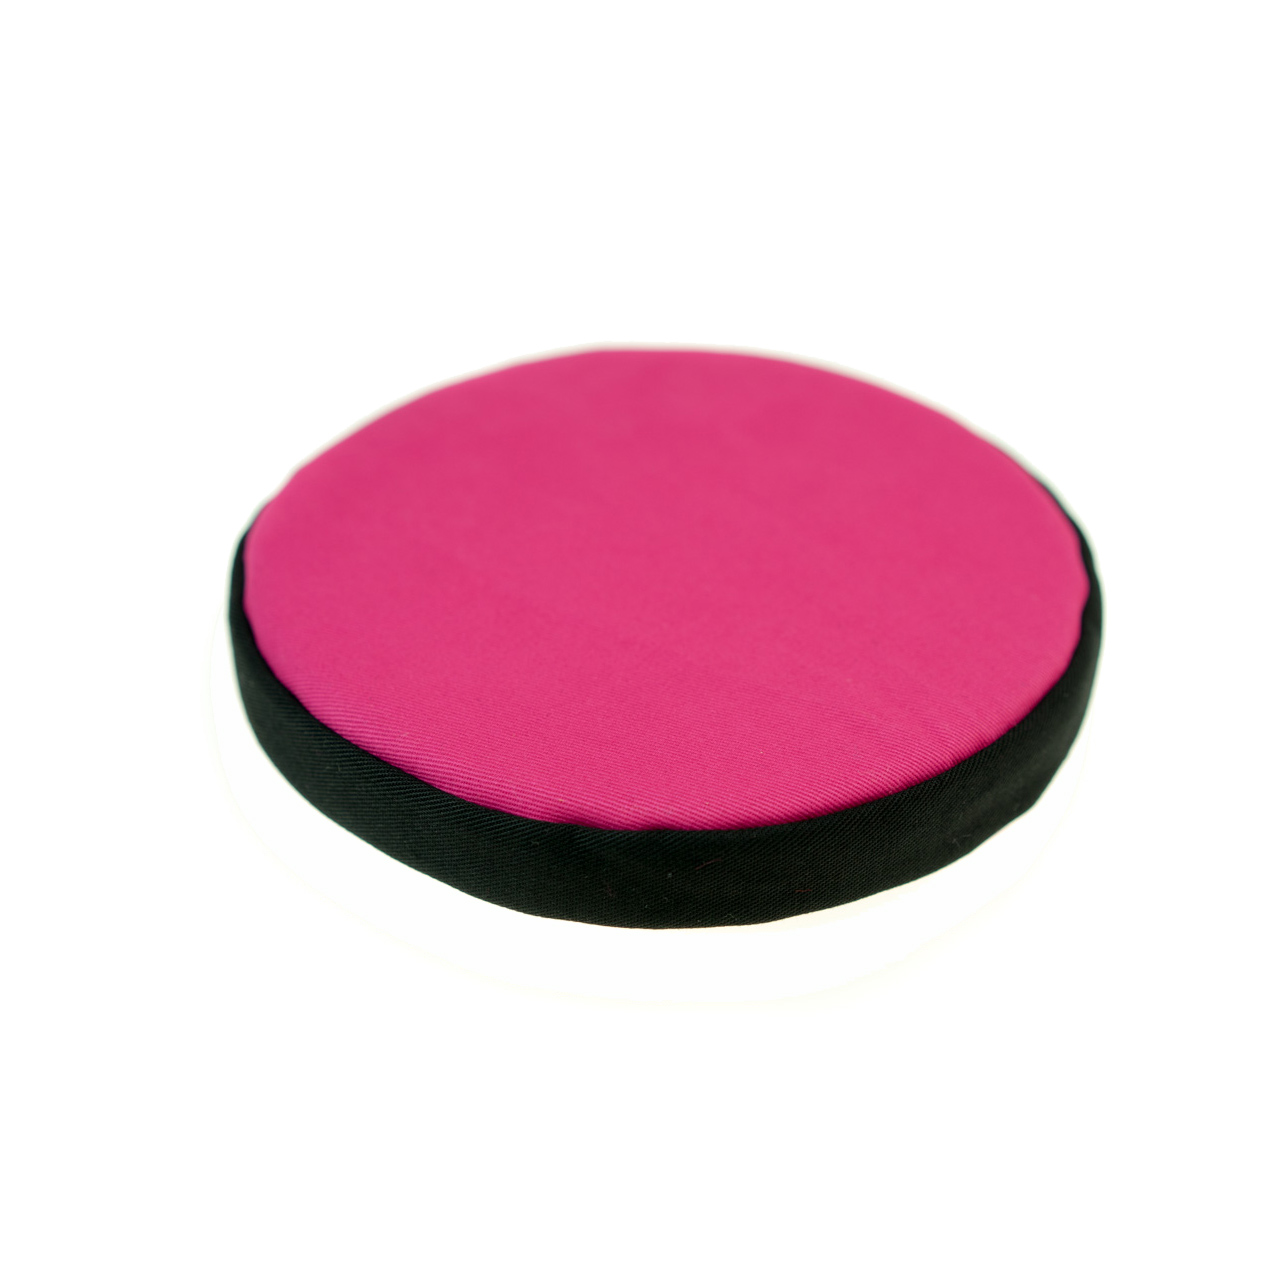 Rundes Kissen für Klangschale pink mit schwarzer Borte Durchmesser 15 cm